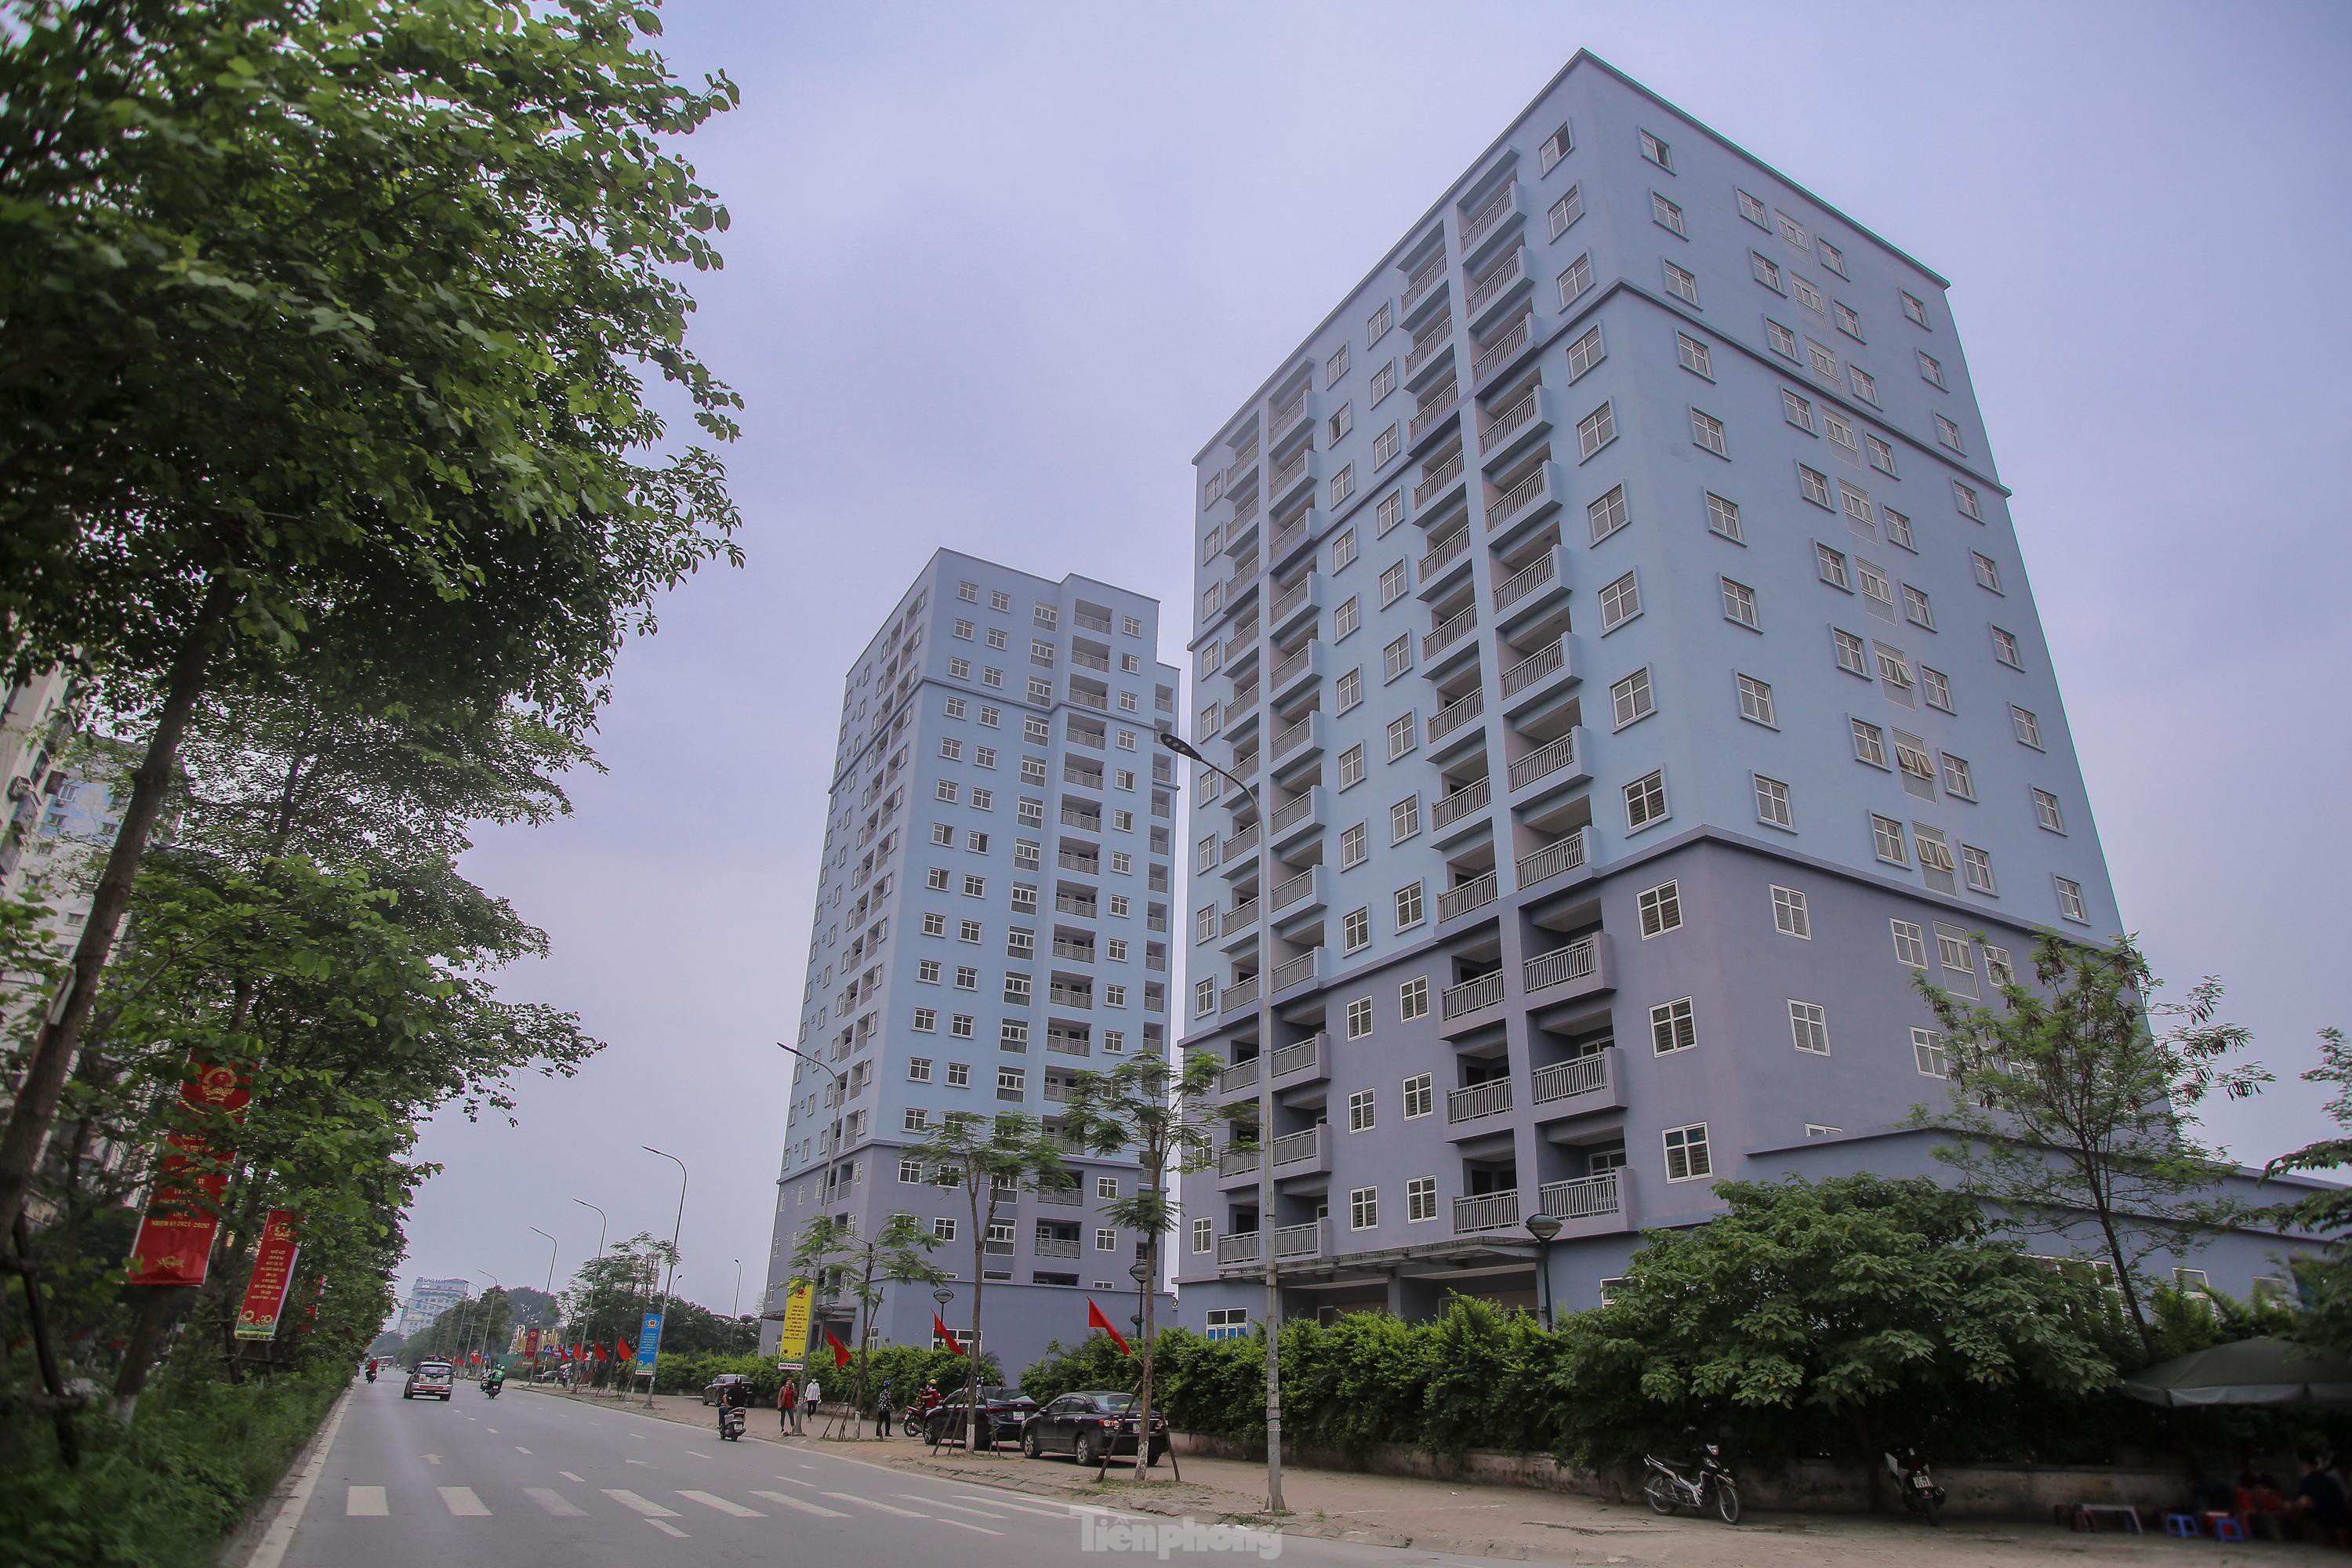  Khu chung cư tọa lạc vị trí đắc địa ở Hà Nội thành nơi tập kết rác  - Ảnh 1.